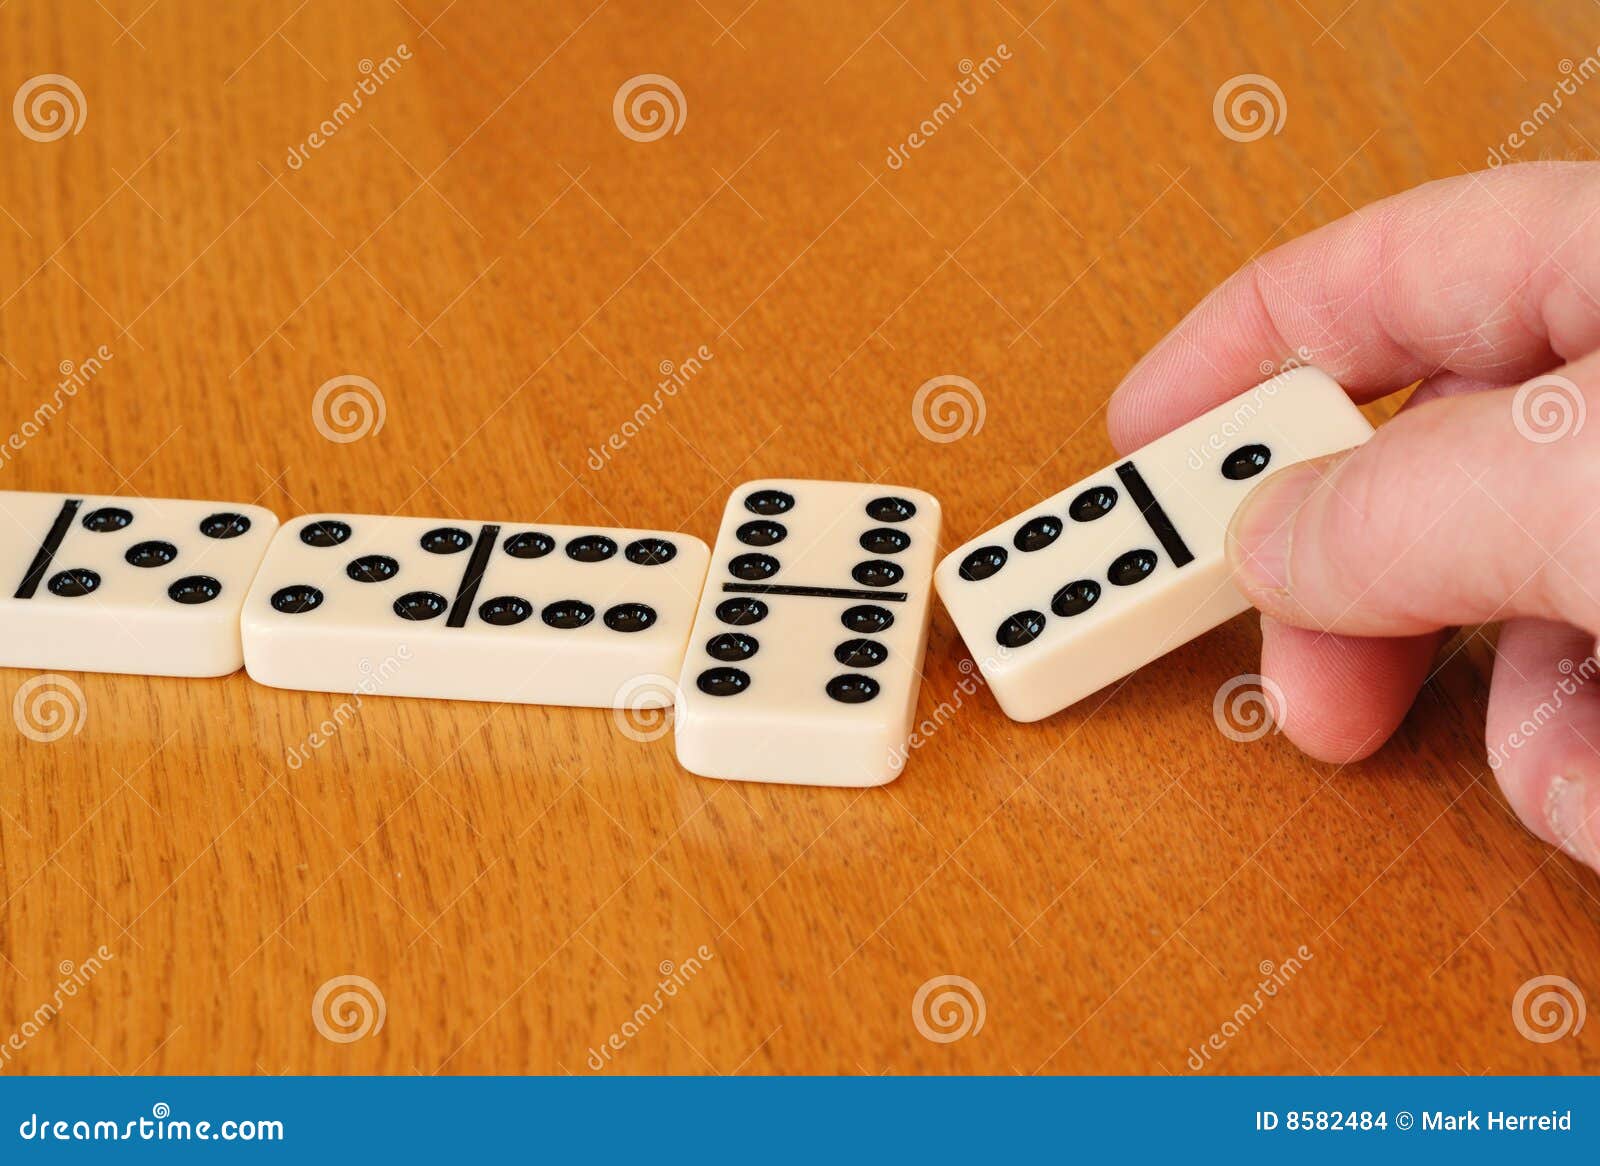 Play Dominoes